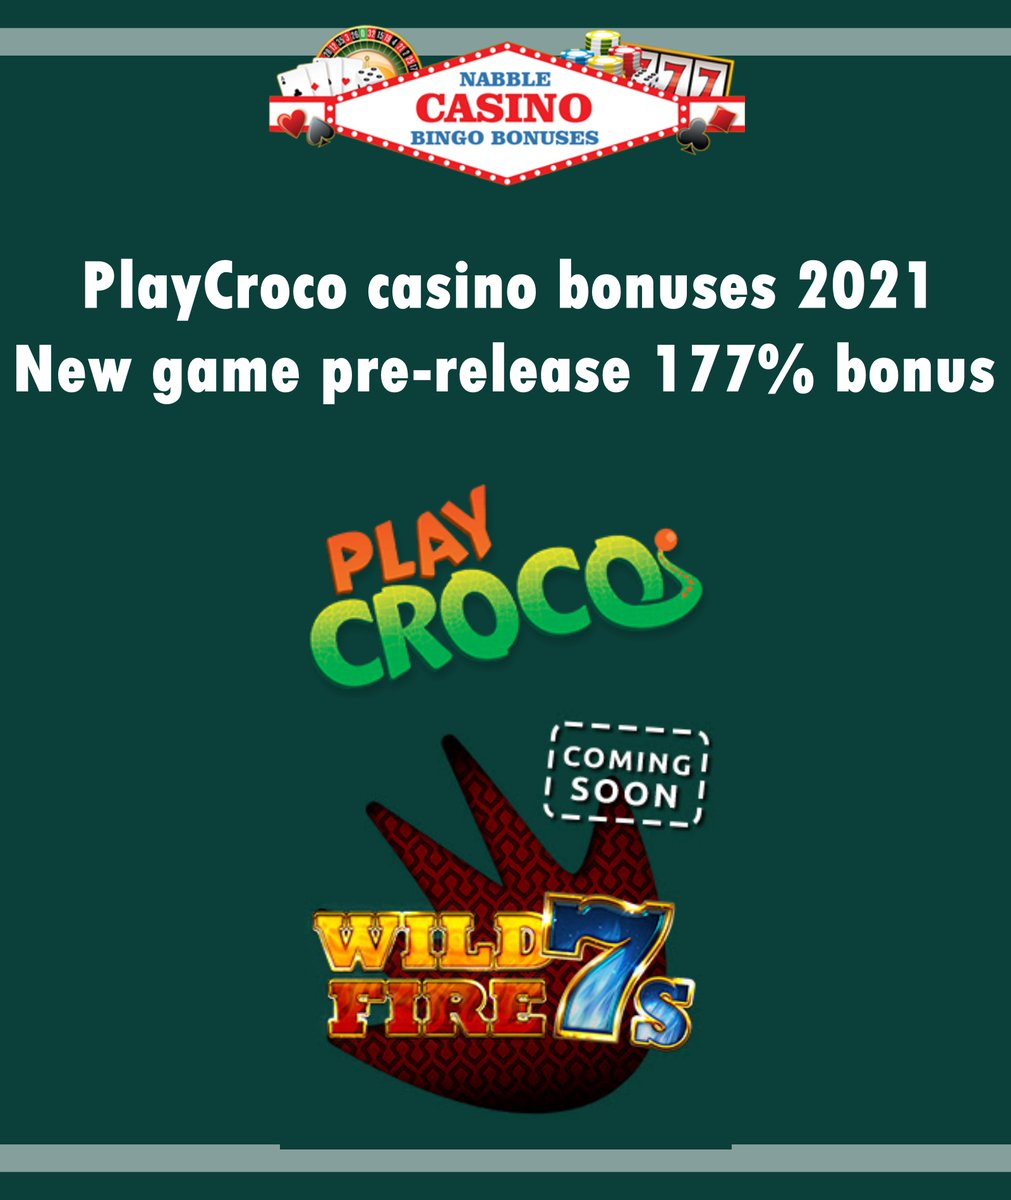 No deposit casino bonus codes